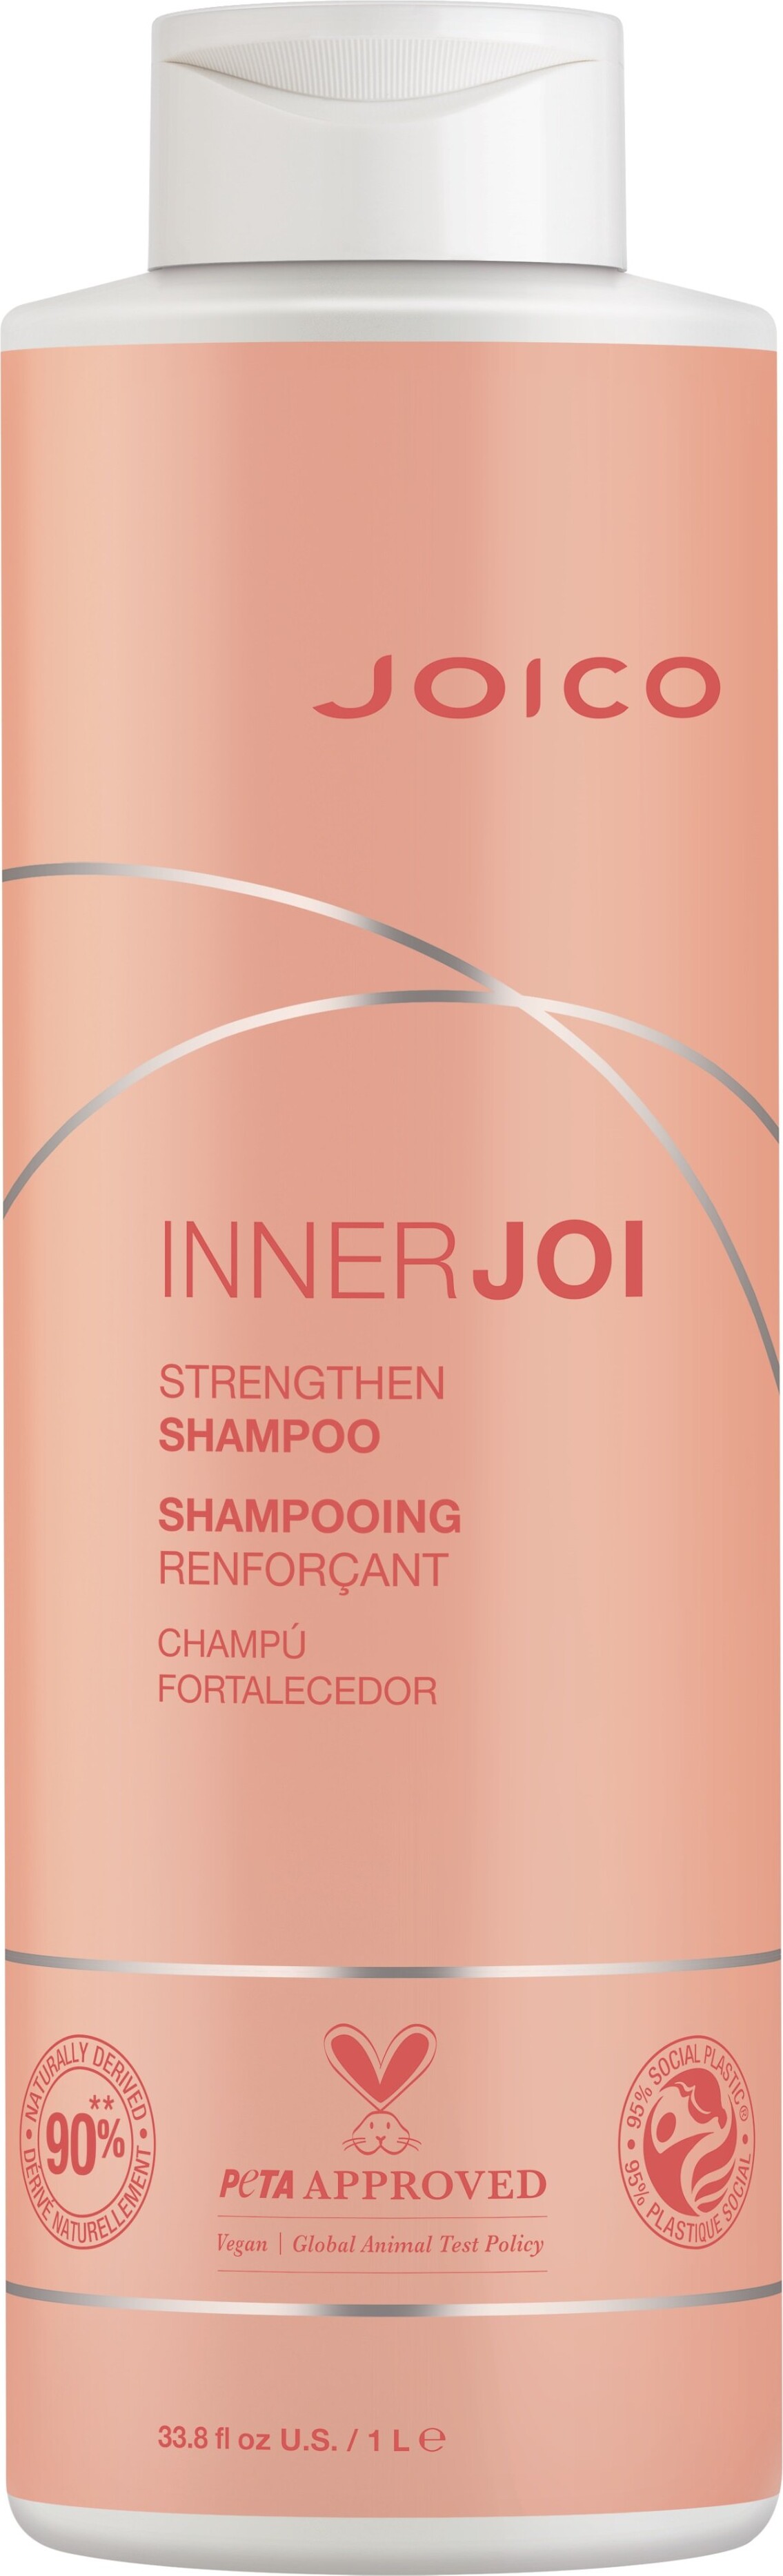 Se Joico - Innerjoi Strengthen Shampoo 1000 Ml hos Gucca.dk